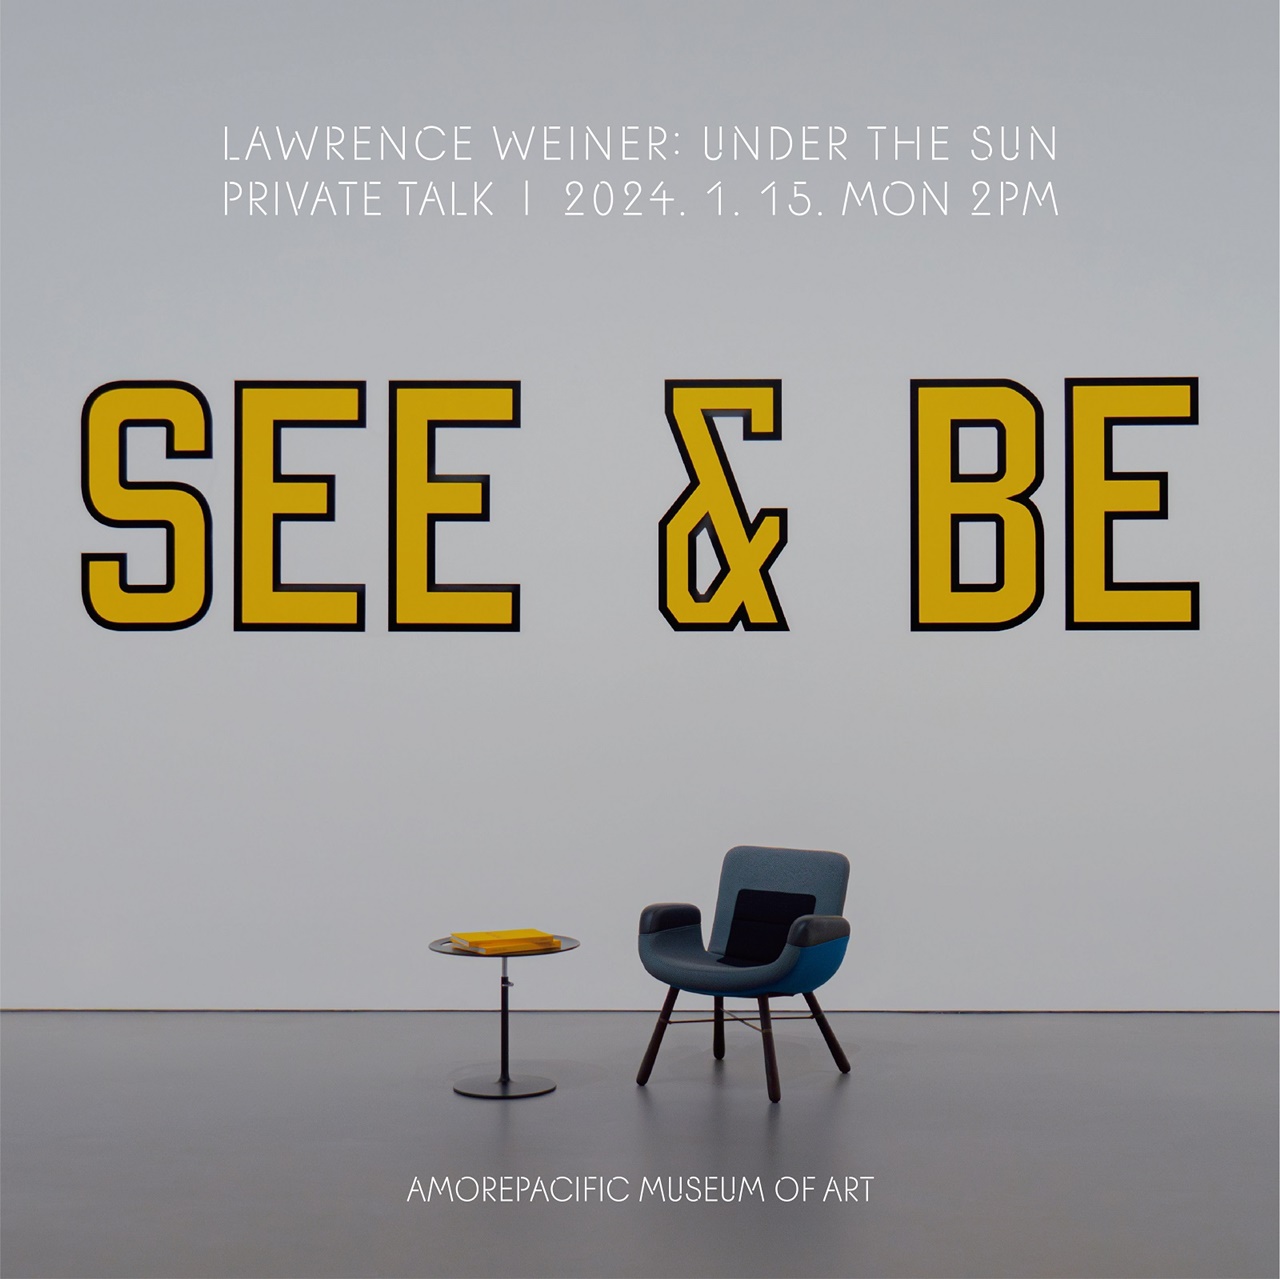 아모레퍼시픽미술관 ‘LAWRENCE WEINER: UNDER THE SUN’ 갤러리 토크 포스터. 사진=아모레퍼시픽미술관